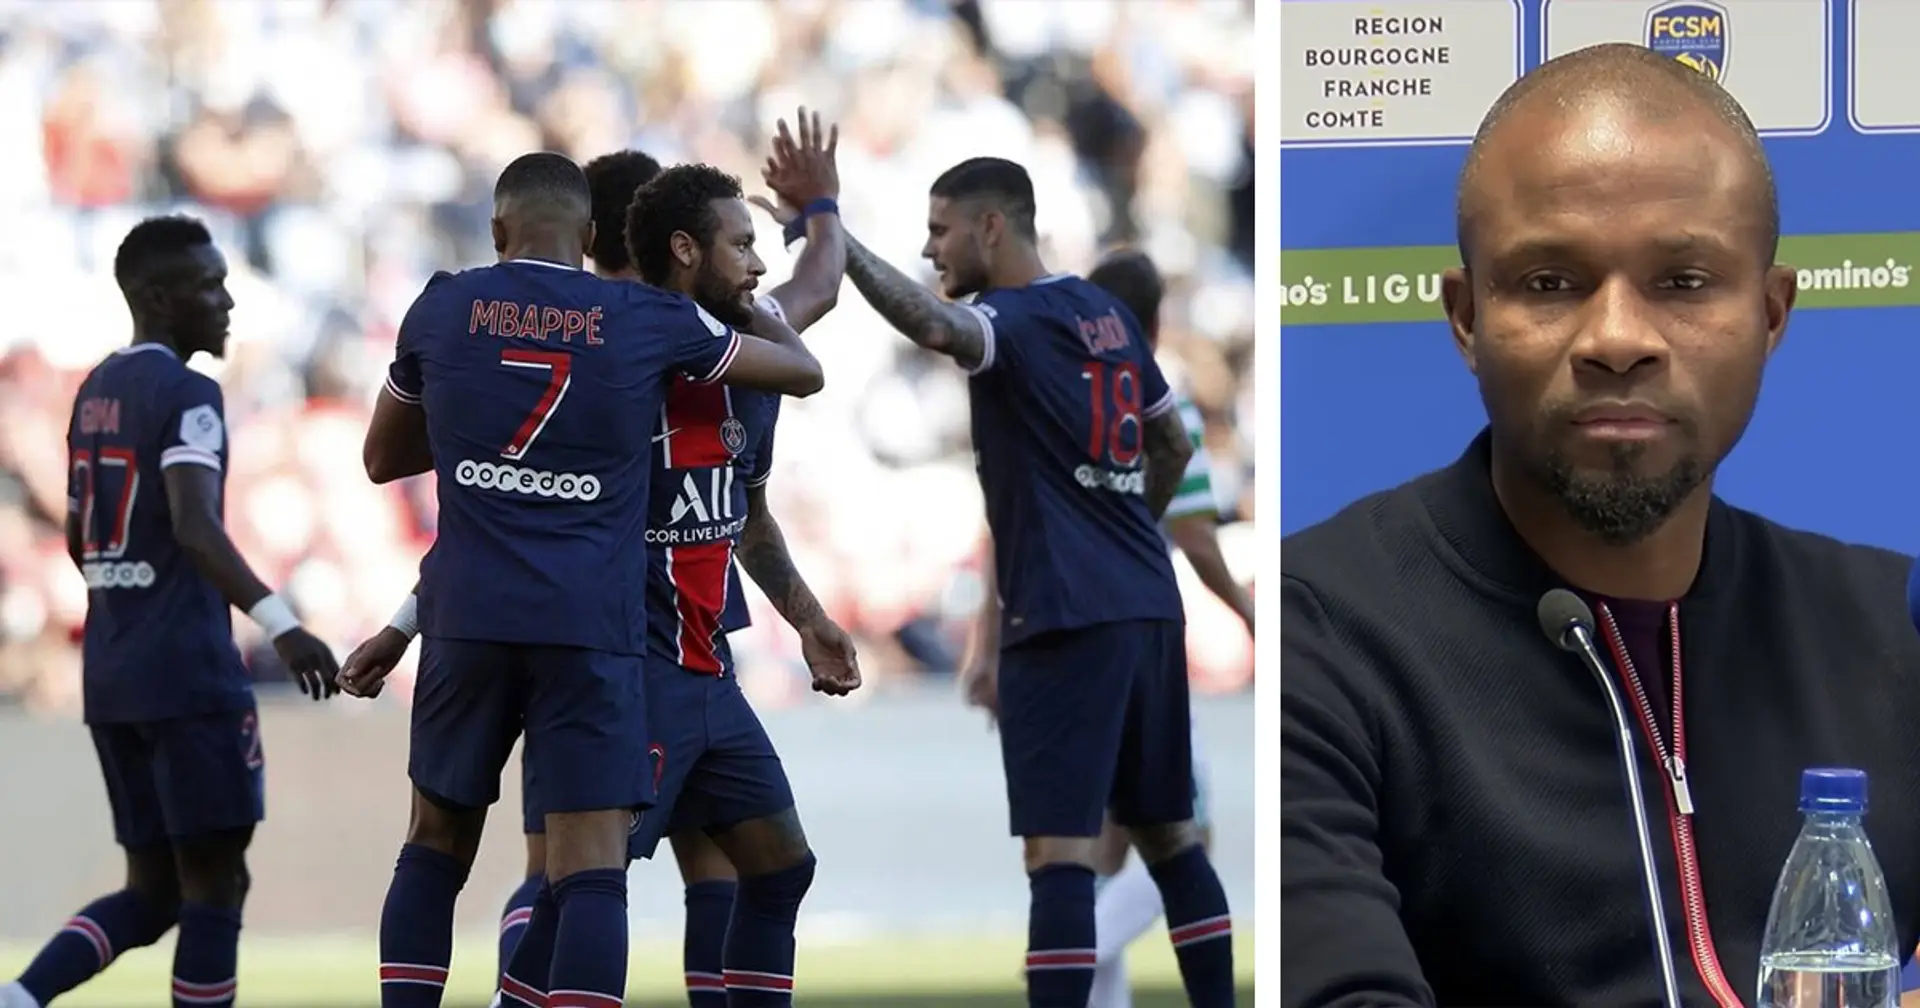 "Paris n'a rien demandé à Sochaux, pas même pour Neymar": Omar Daf, l'entraîneur de Sochaux, contredit Florentin Pogba